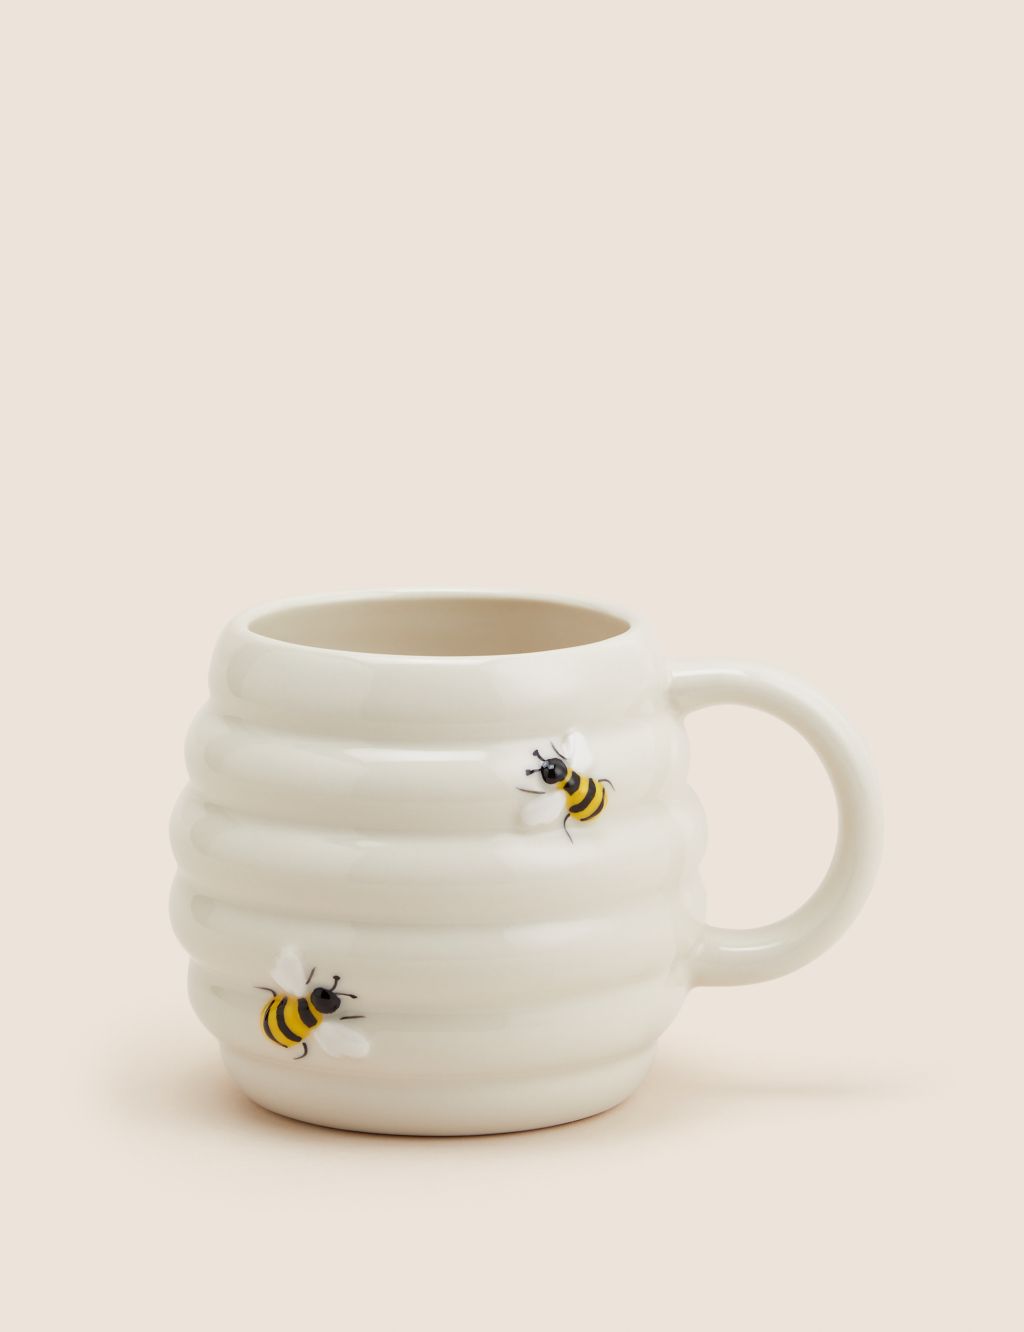 Beehive Mug 3 of 3